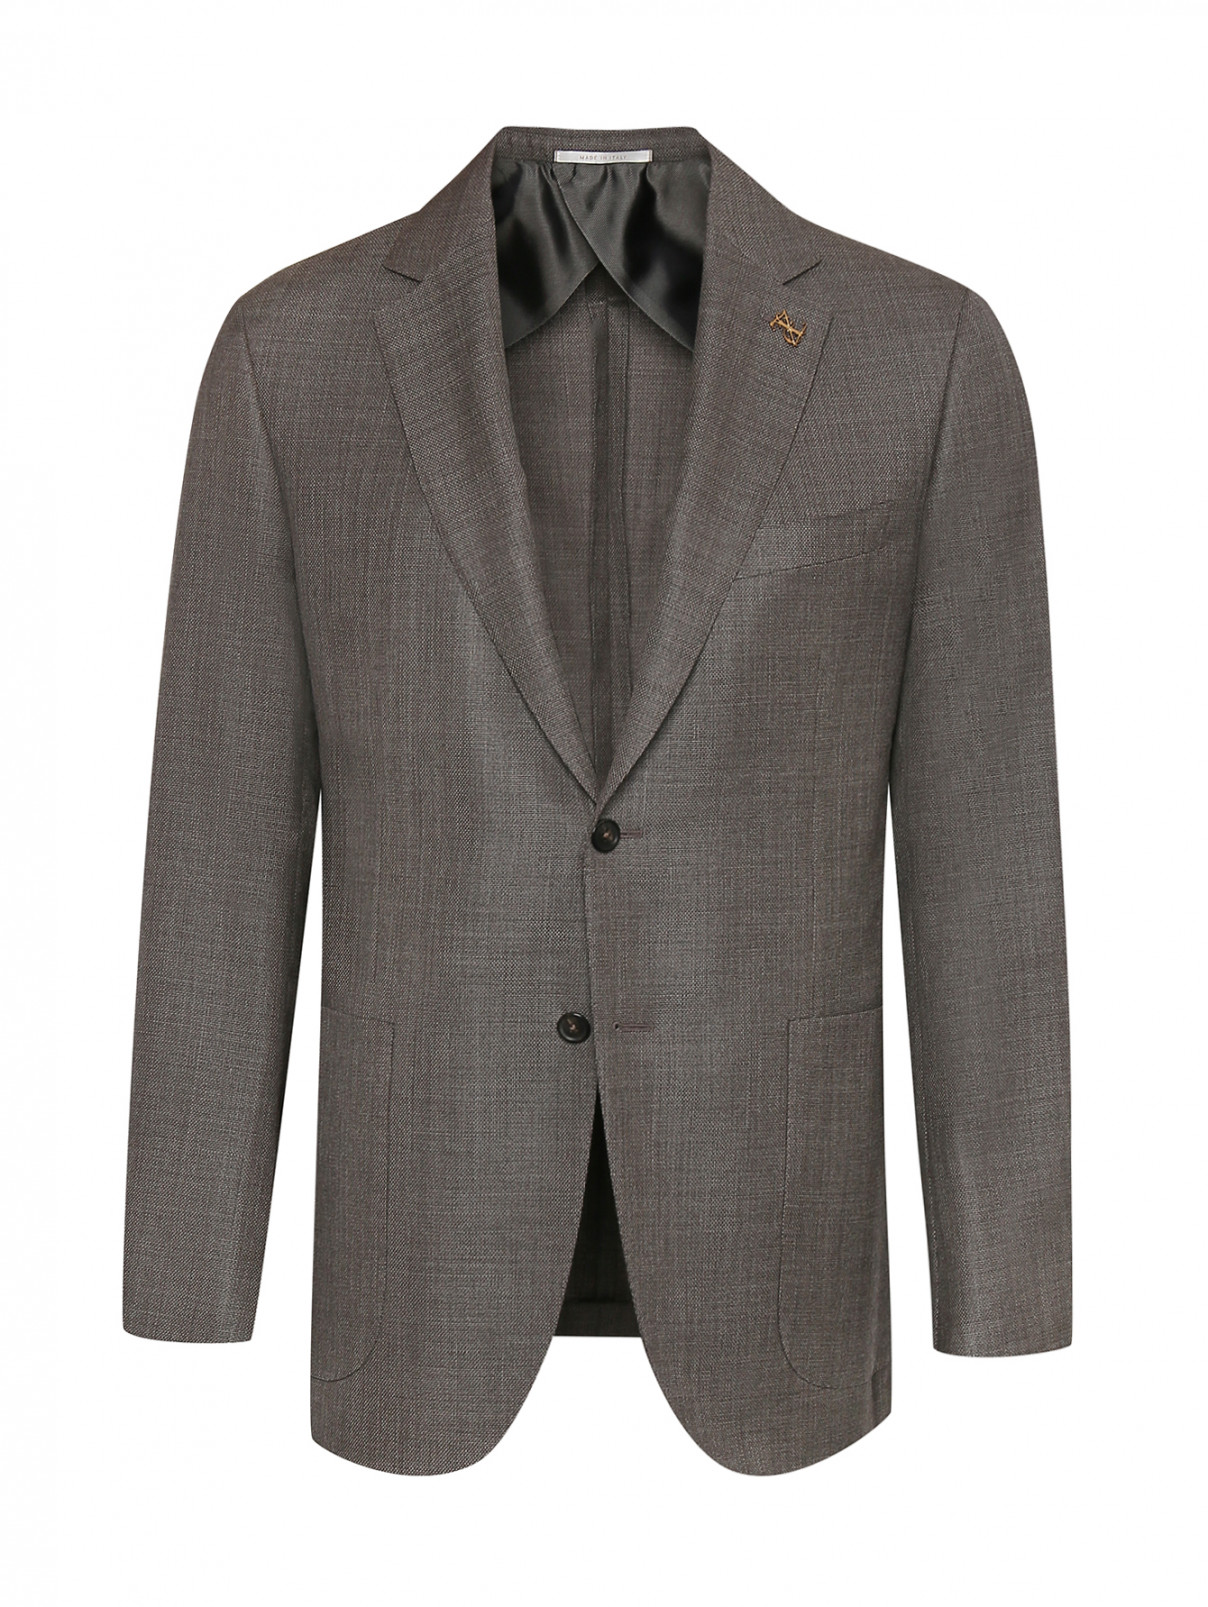 Пиджак из шерсти с карманами Pal Zileri  –  Общий вид  – Цвет:  Коричневый